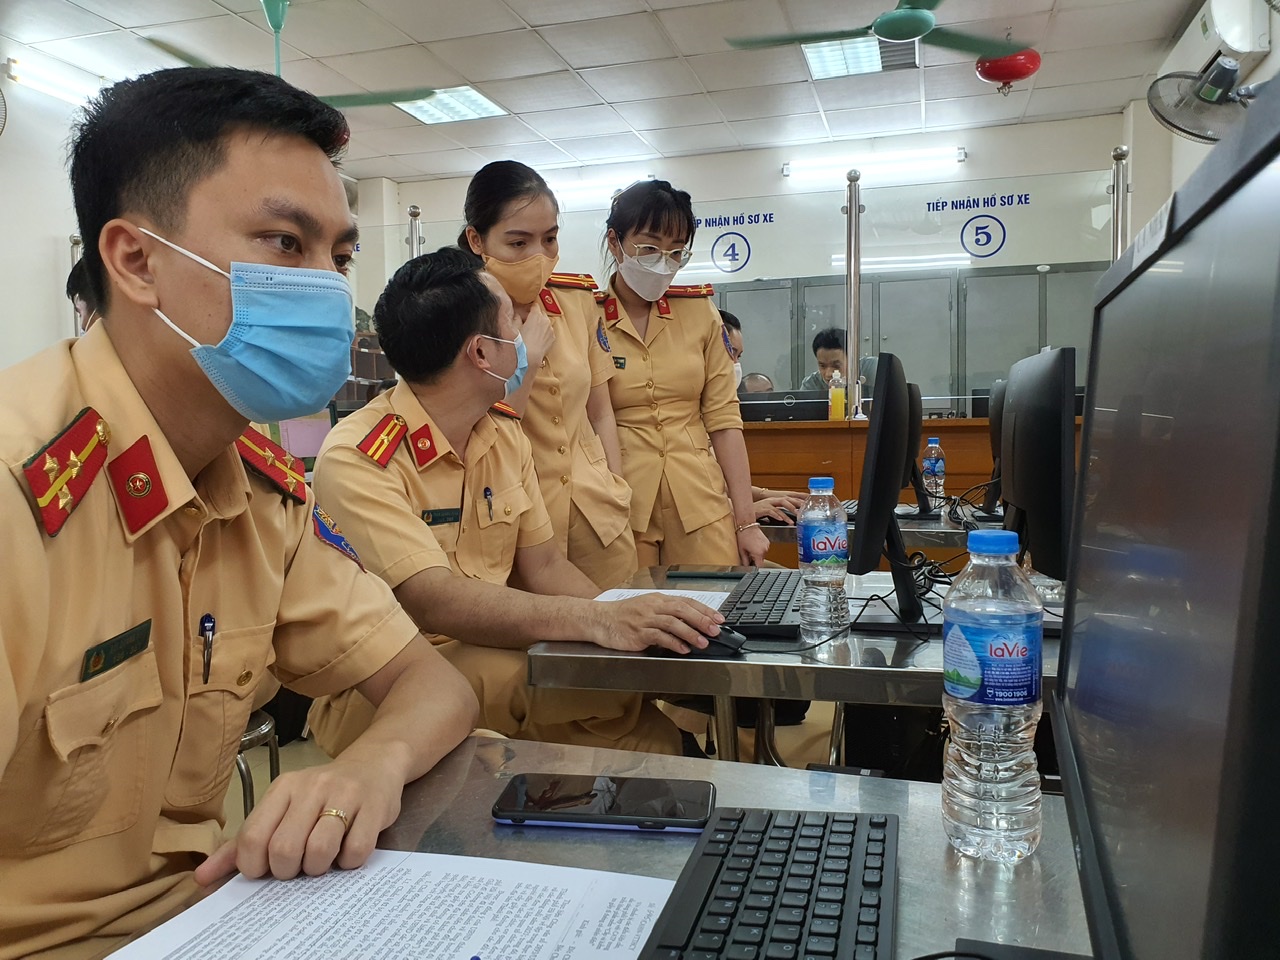 Hiện Phòng CSGT Công an Thành phố Hà Nội đang gấp rút hoàn thiện việc cấp giấy đi đường.